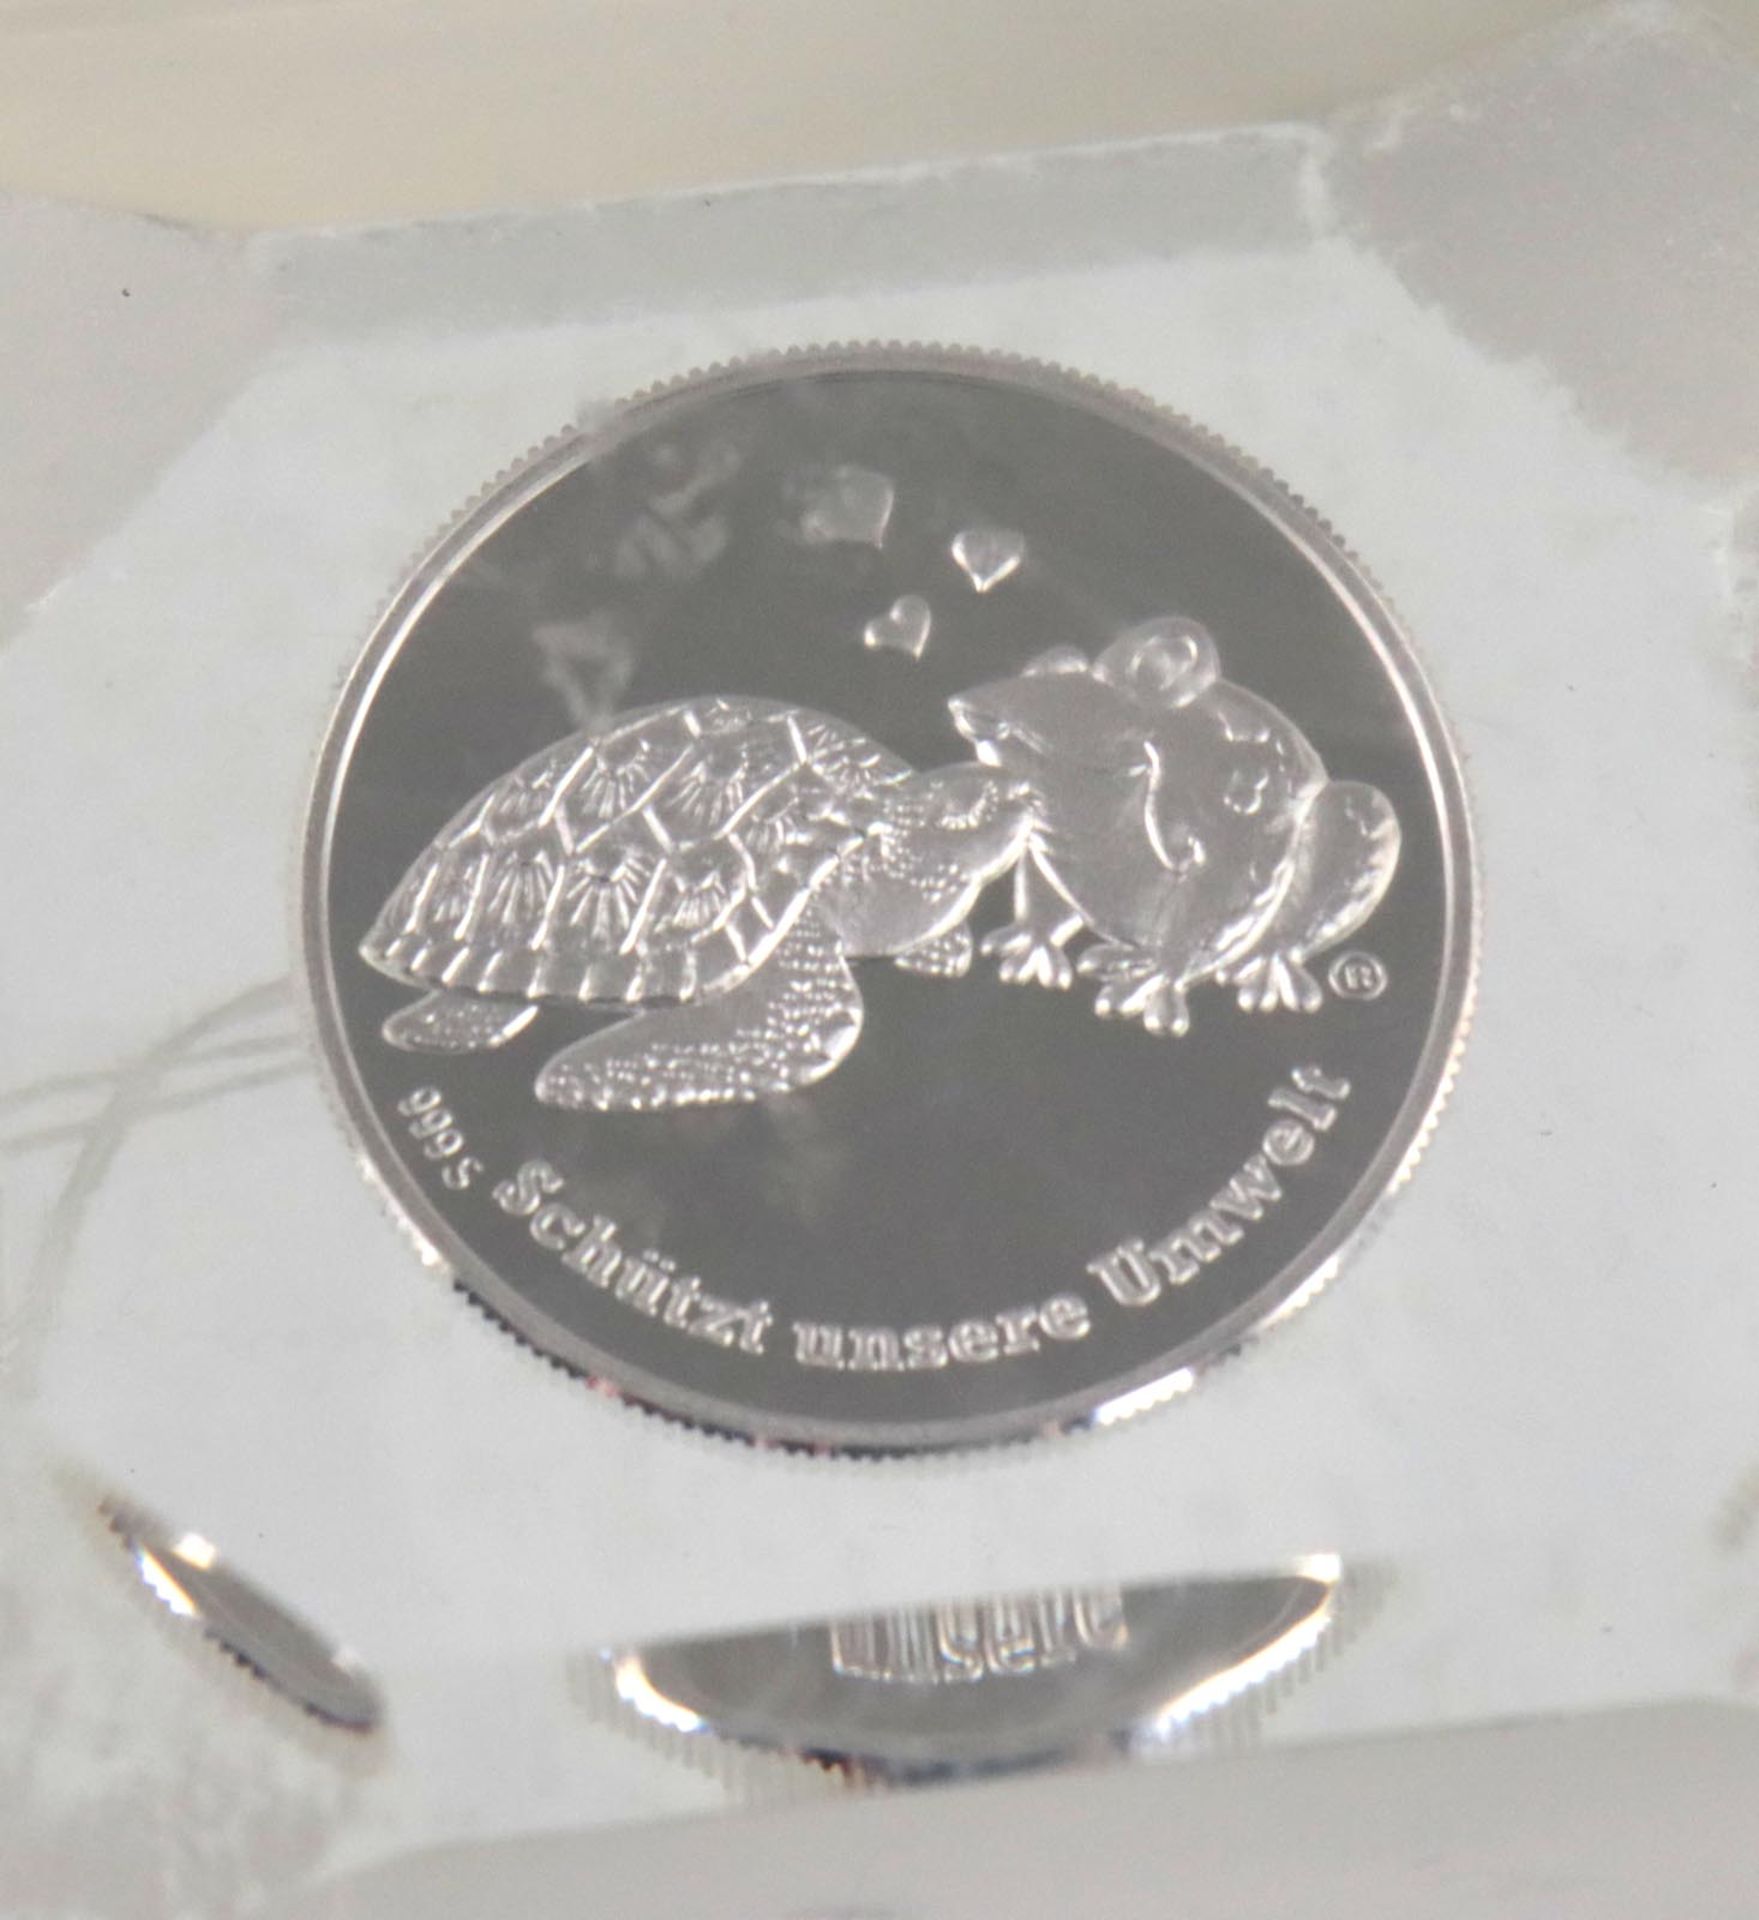 Silbermünze im Acrylwürfel - Bild 2 aus 2